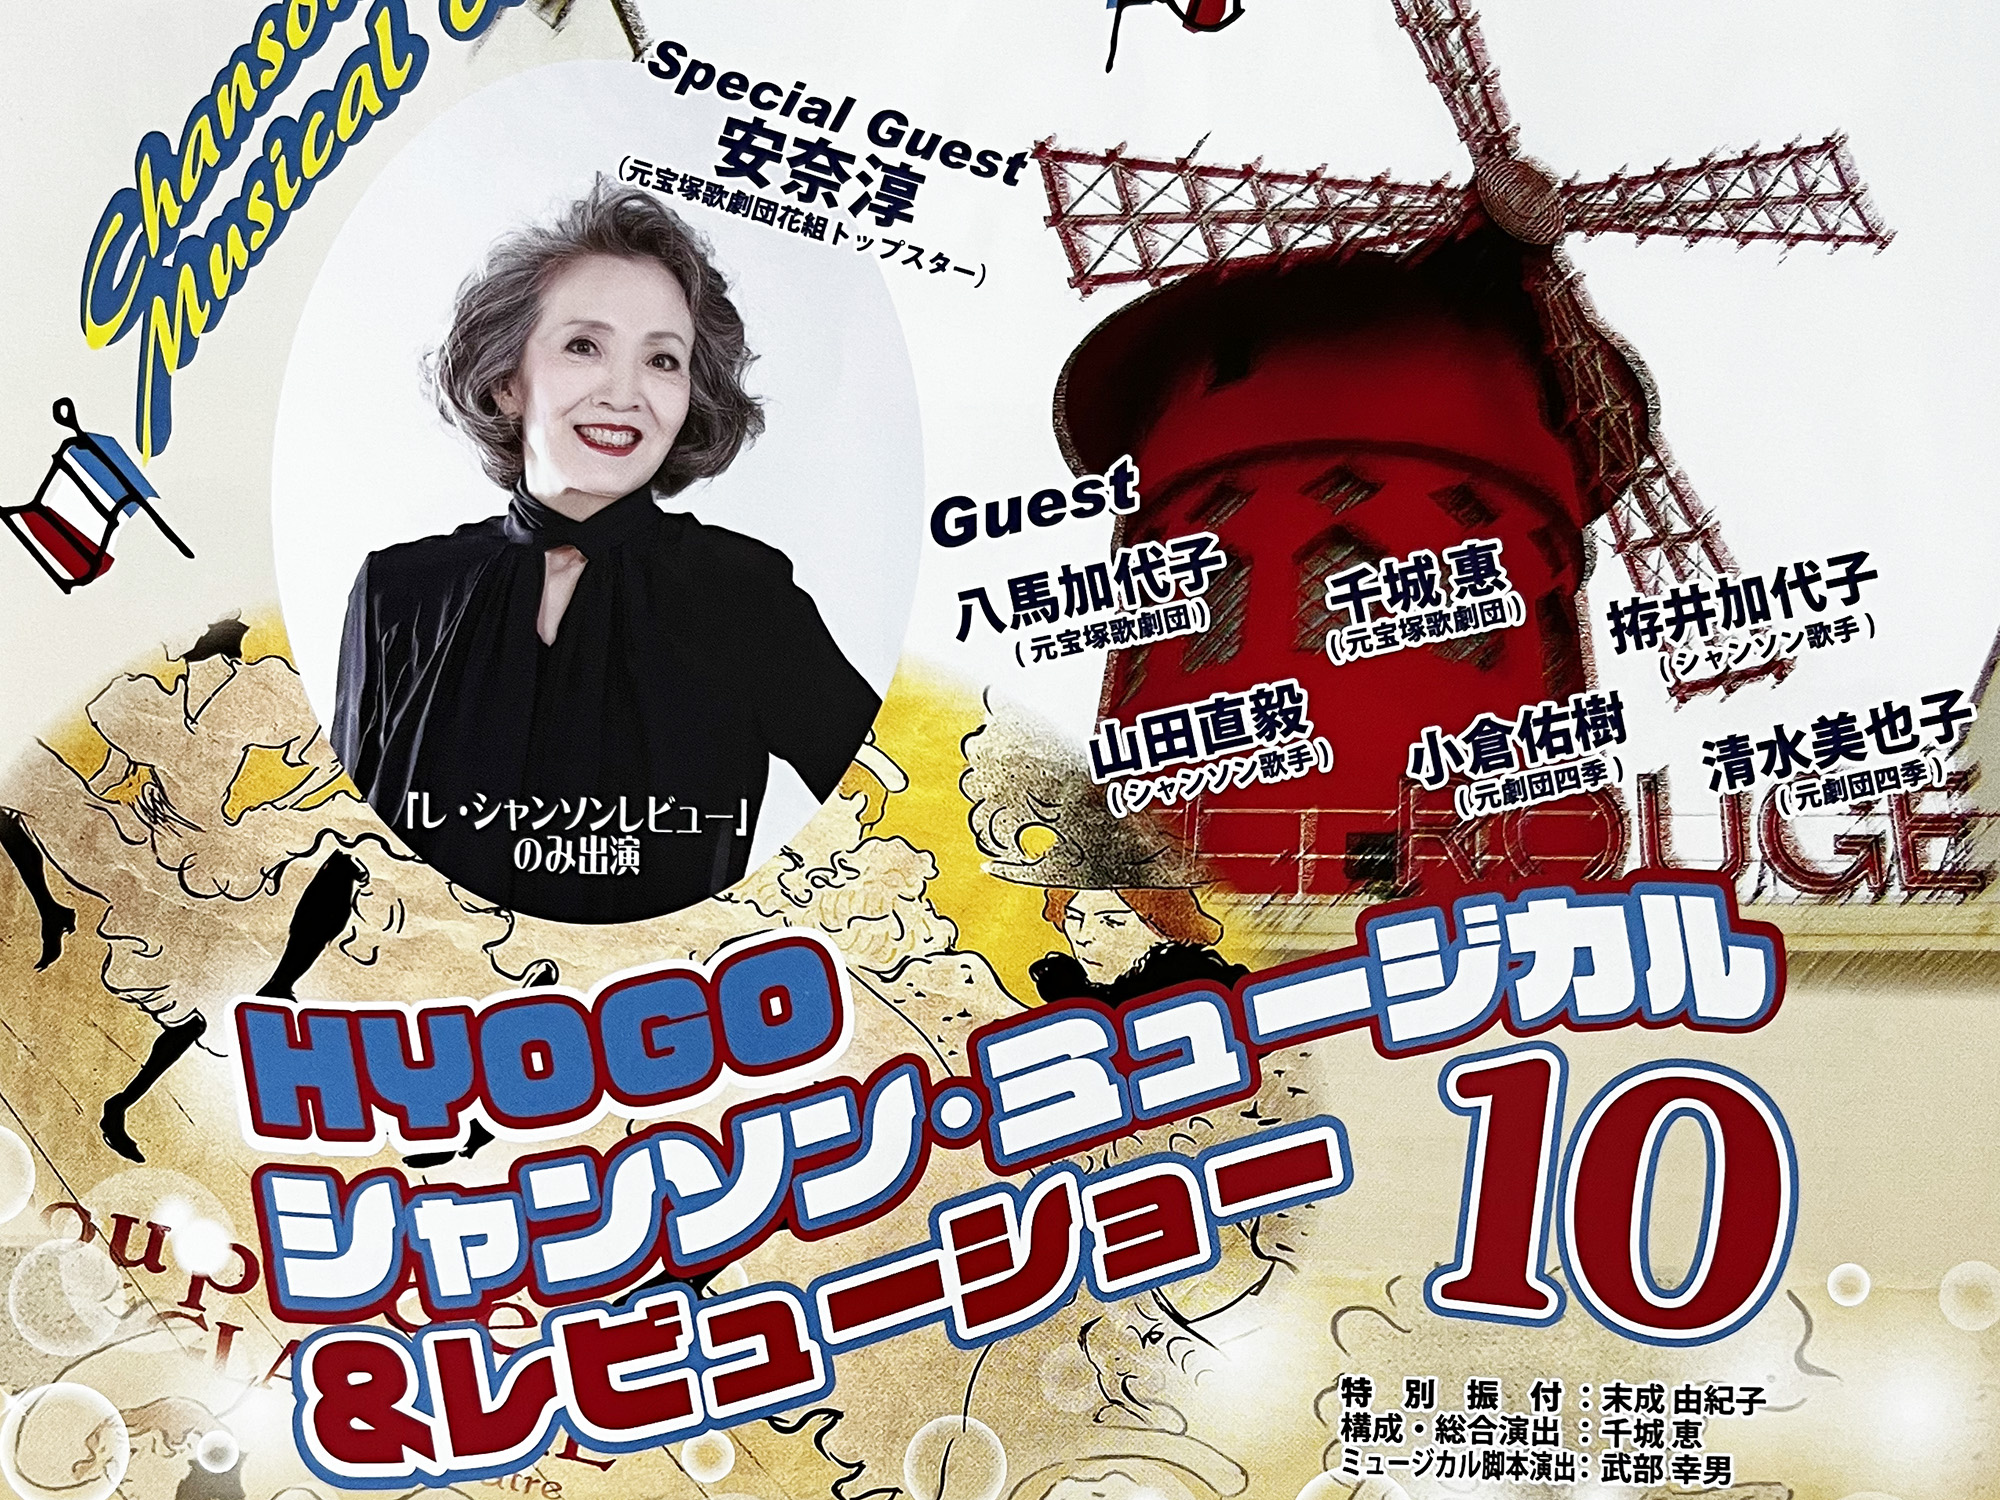 2022年10月2日 HYOGO シャンソン・ミュージカル&レビューショー10